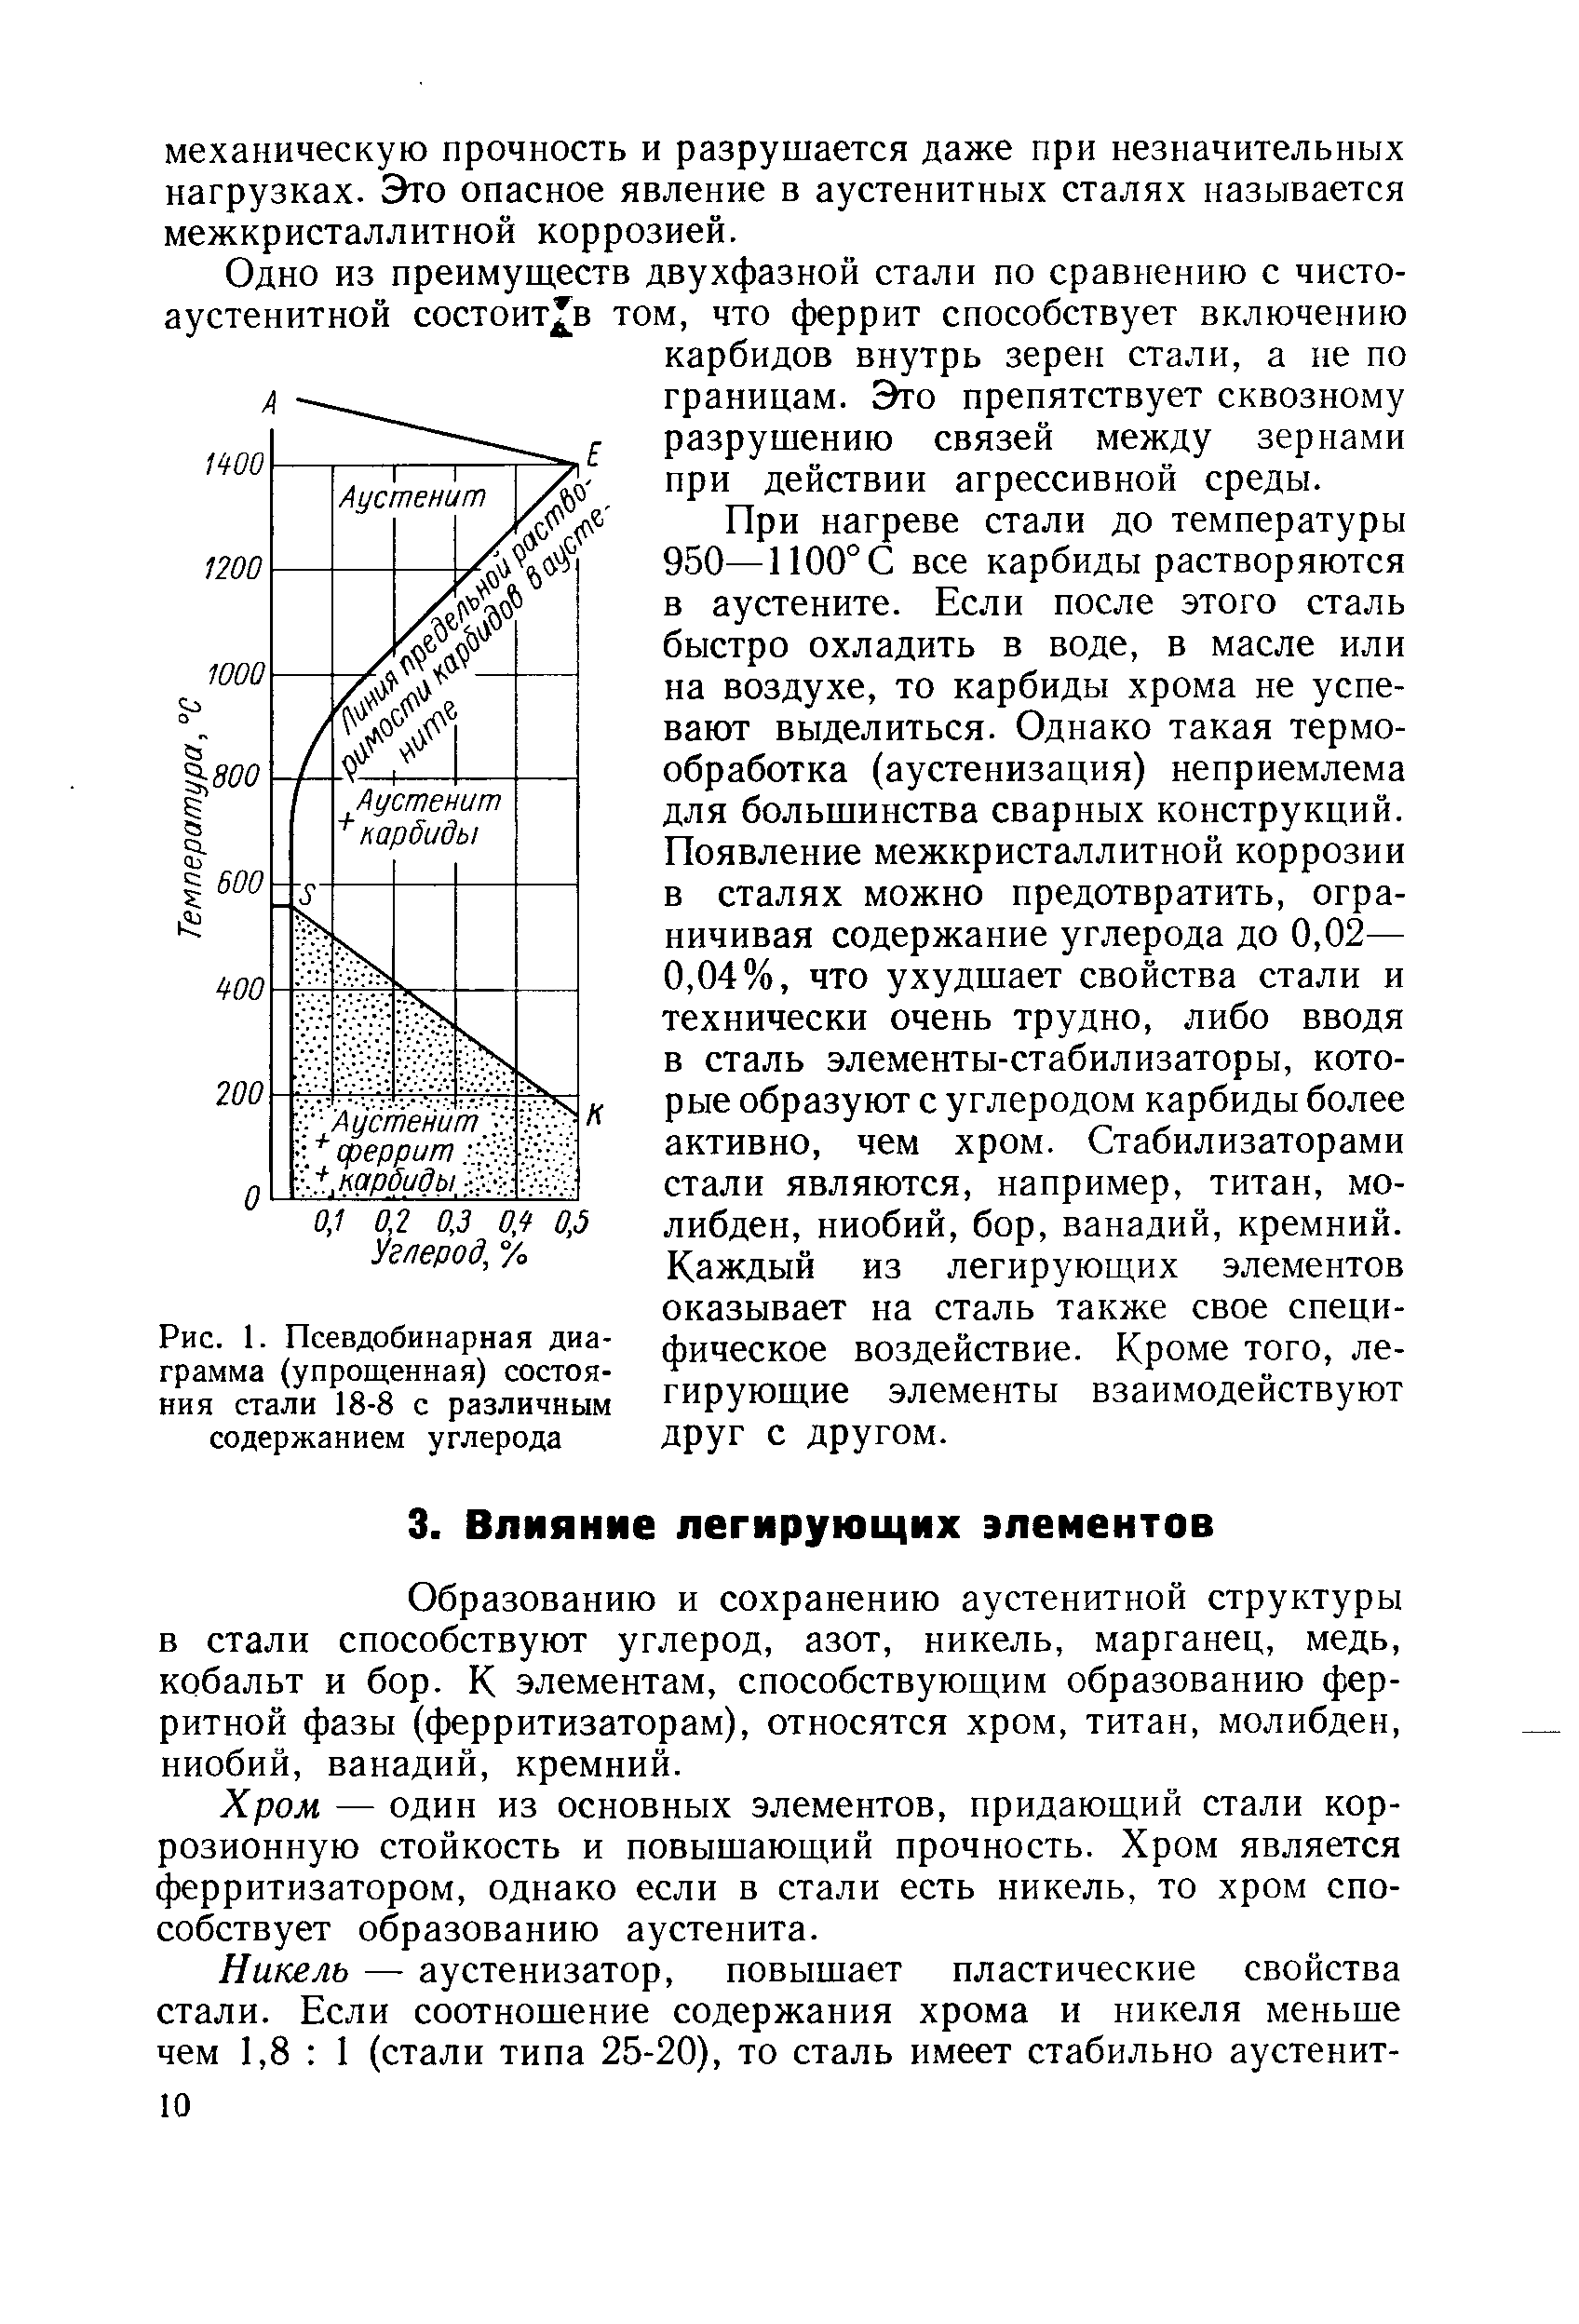 Рис. 1. Псевдобинарная диаграмма (упрощенная) состояния стали 18-8 с различным содержанием углерода
